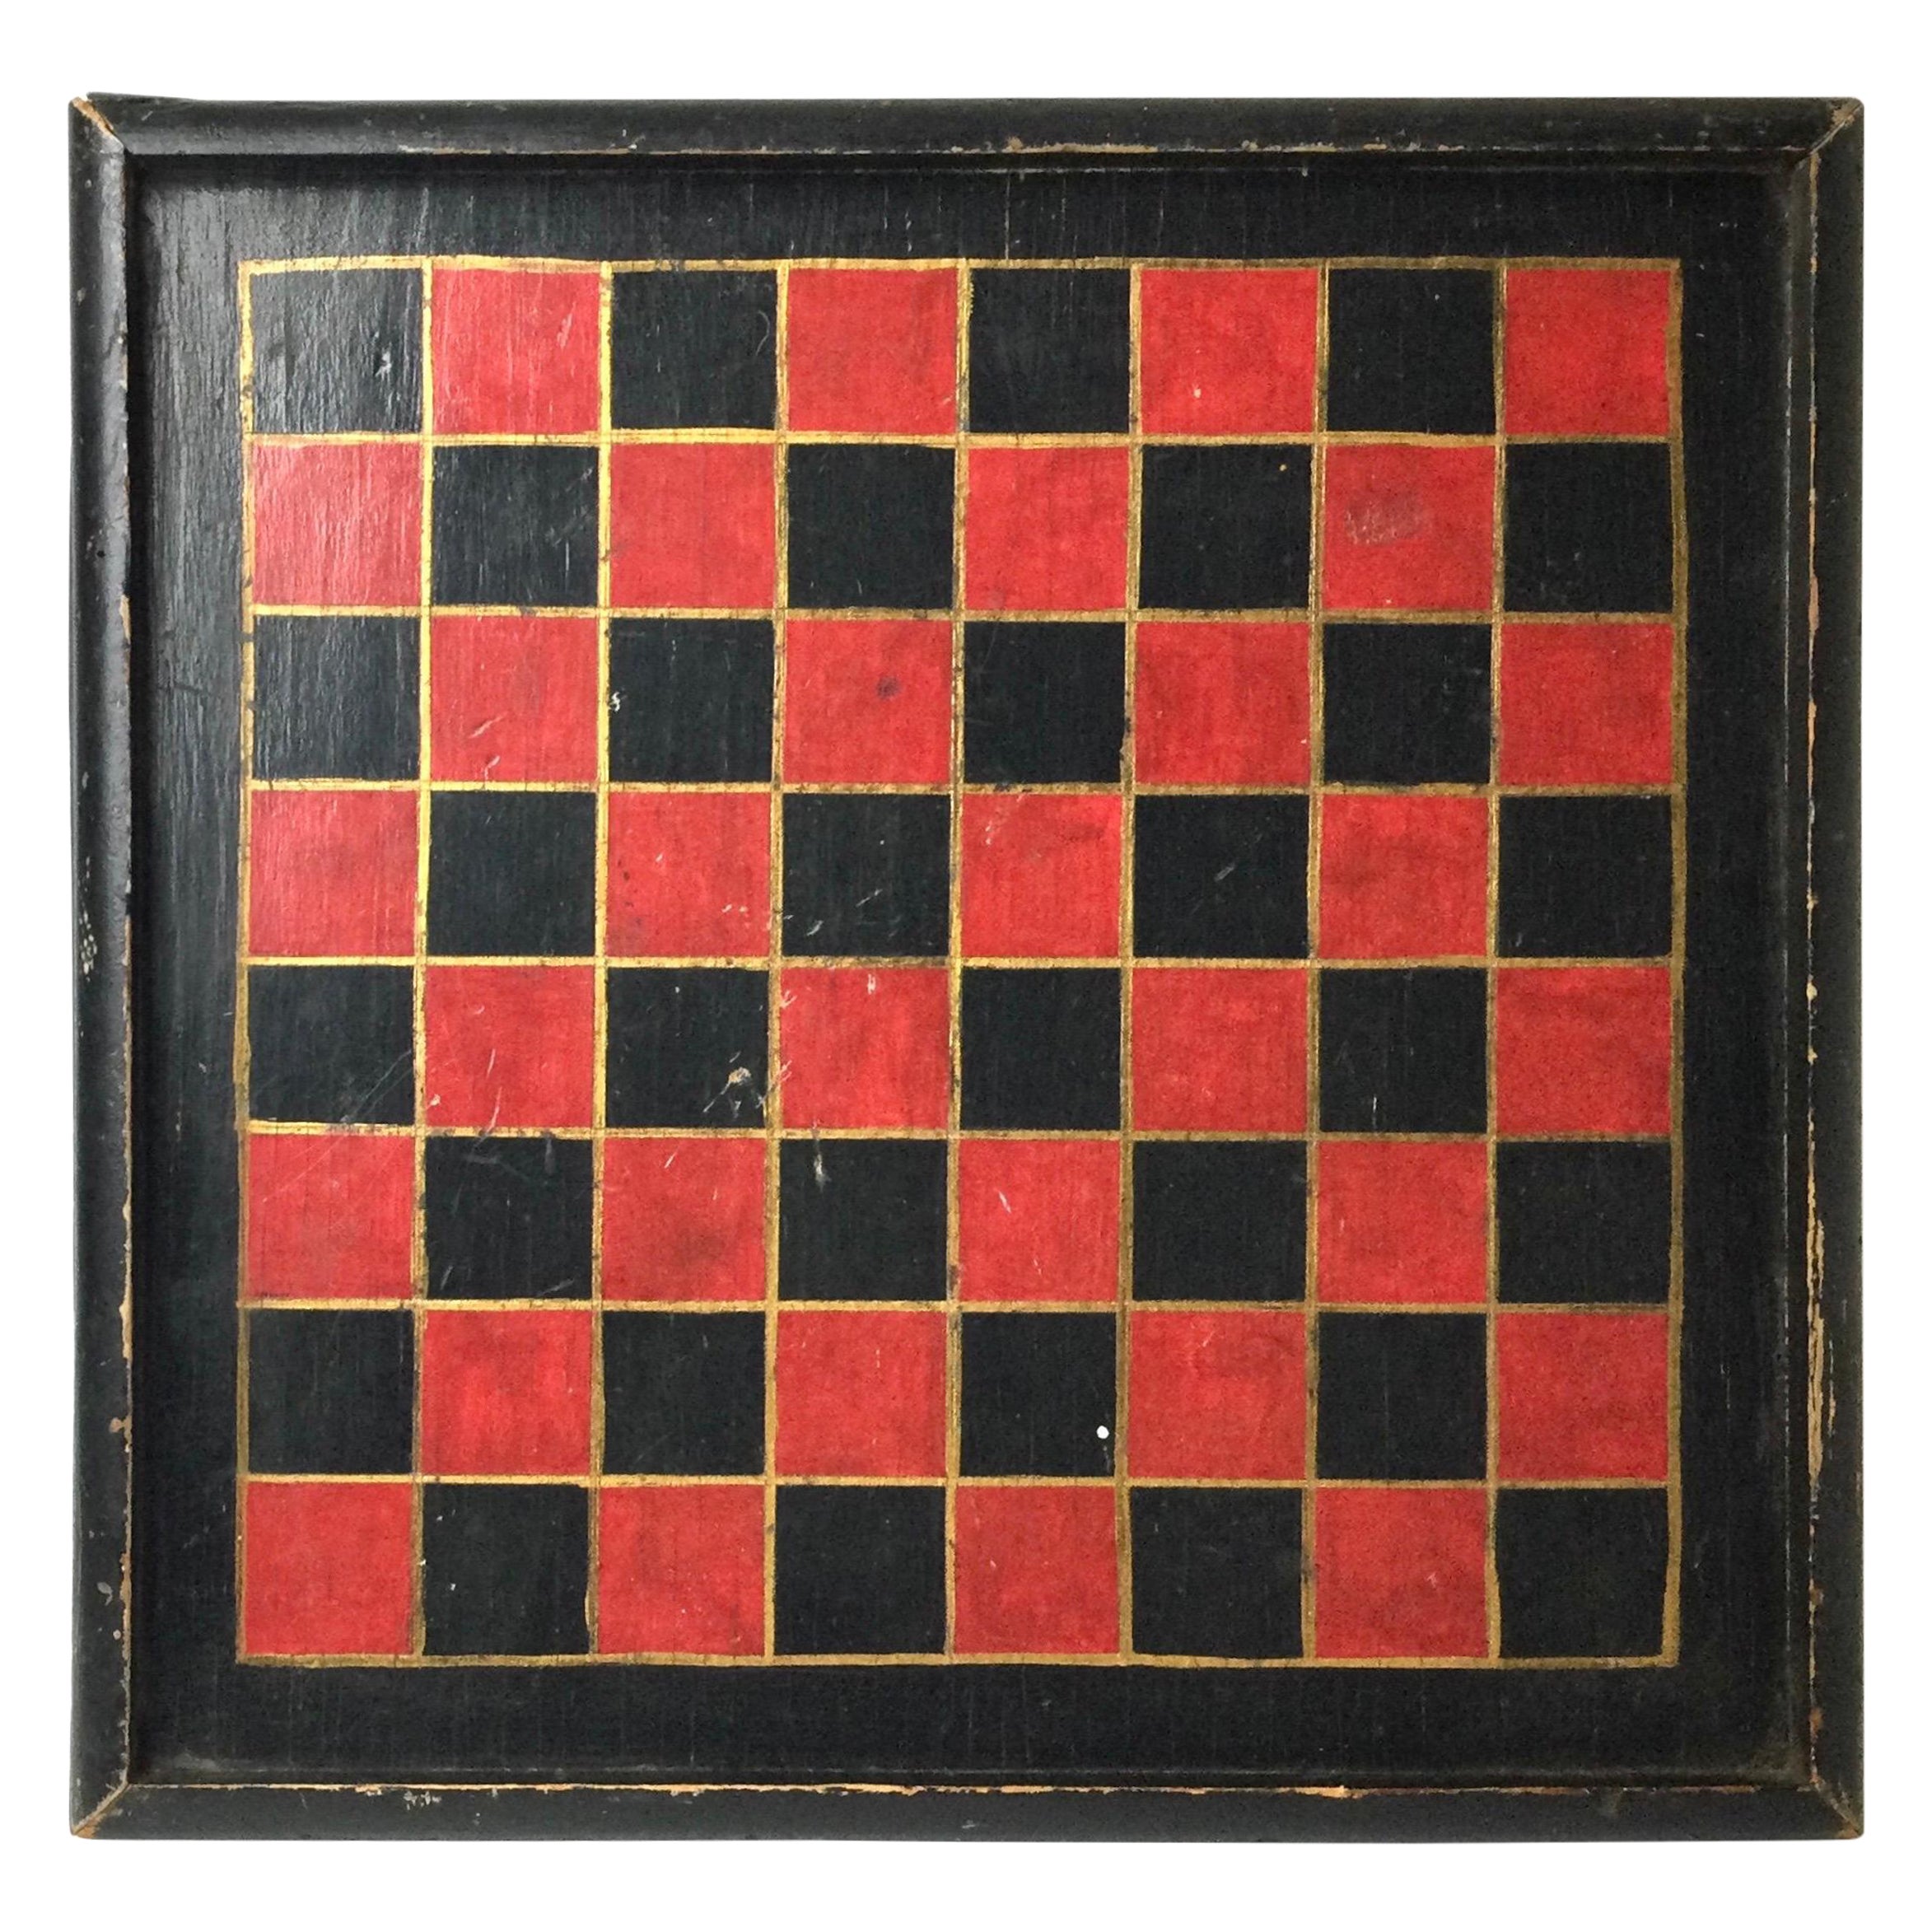 Spielbrett aus dem 19. Jahrhundert mit originaler roter und schwarzer Original-Oberfläche